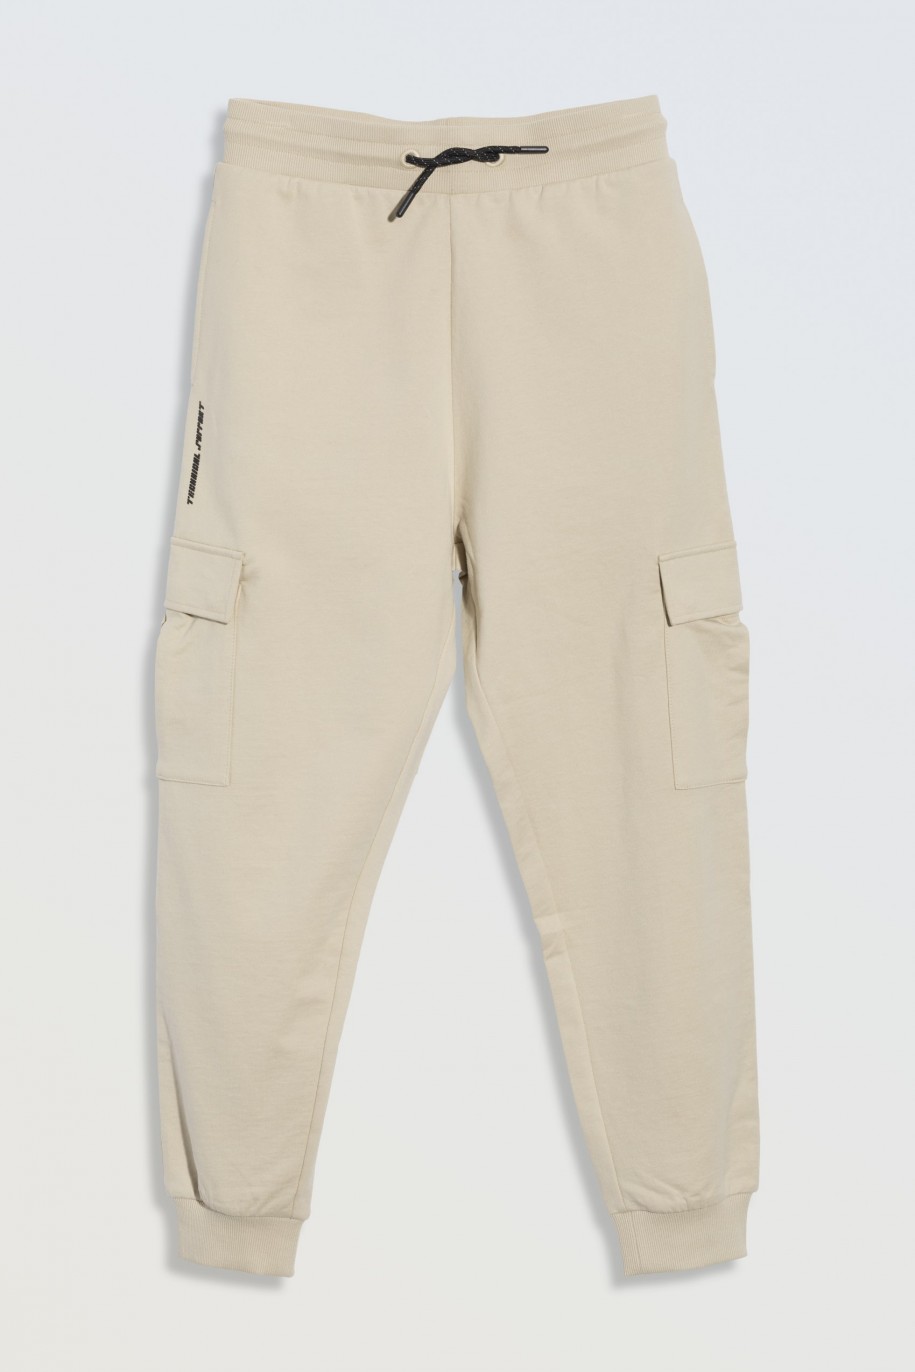 Beżowe spodnie dresowe oversize z przestrzennymi kieszeniami na nogawkach - 46843